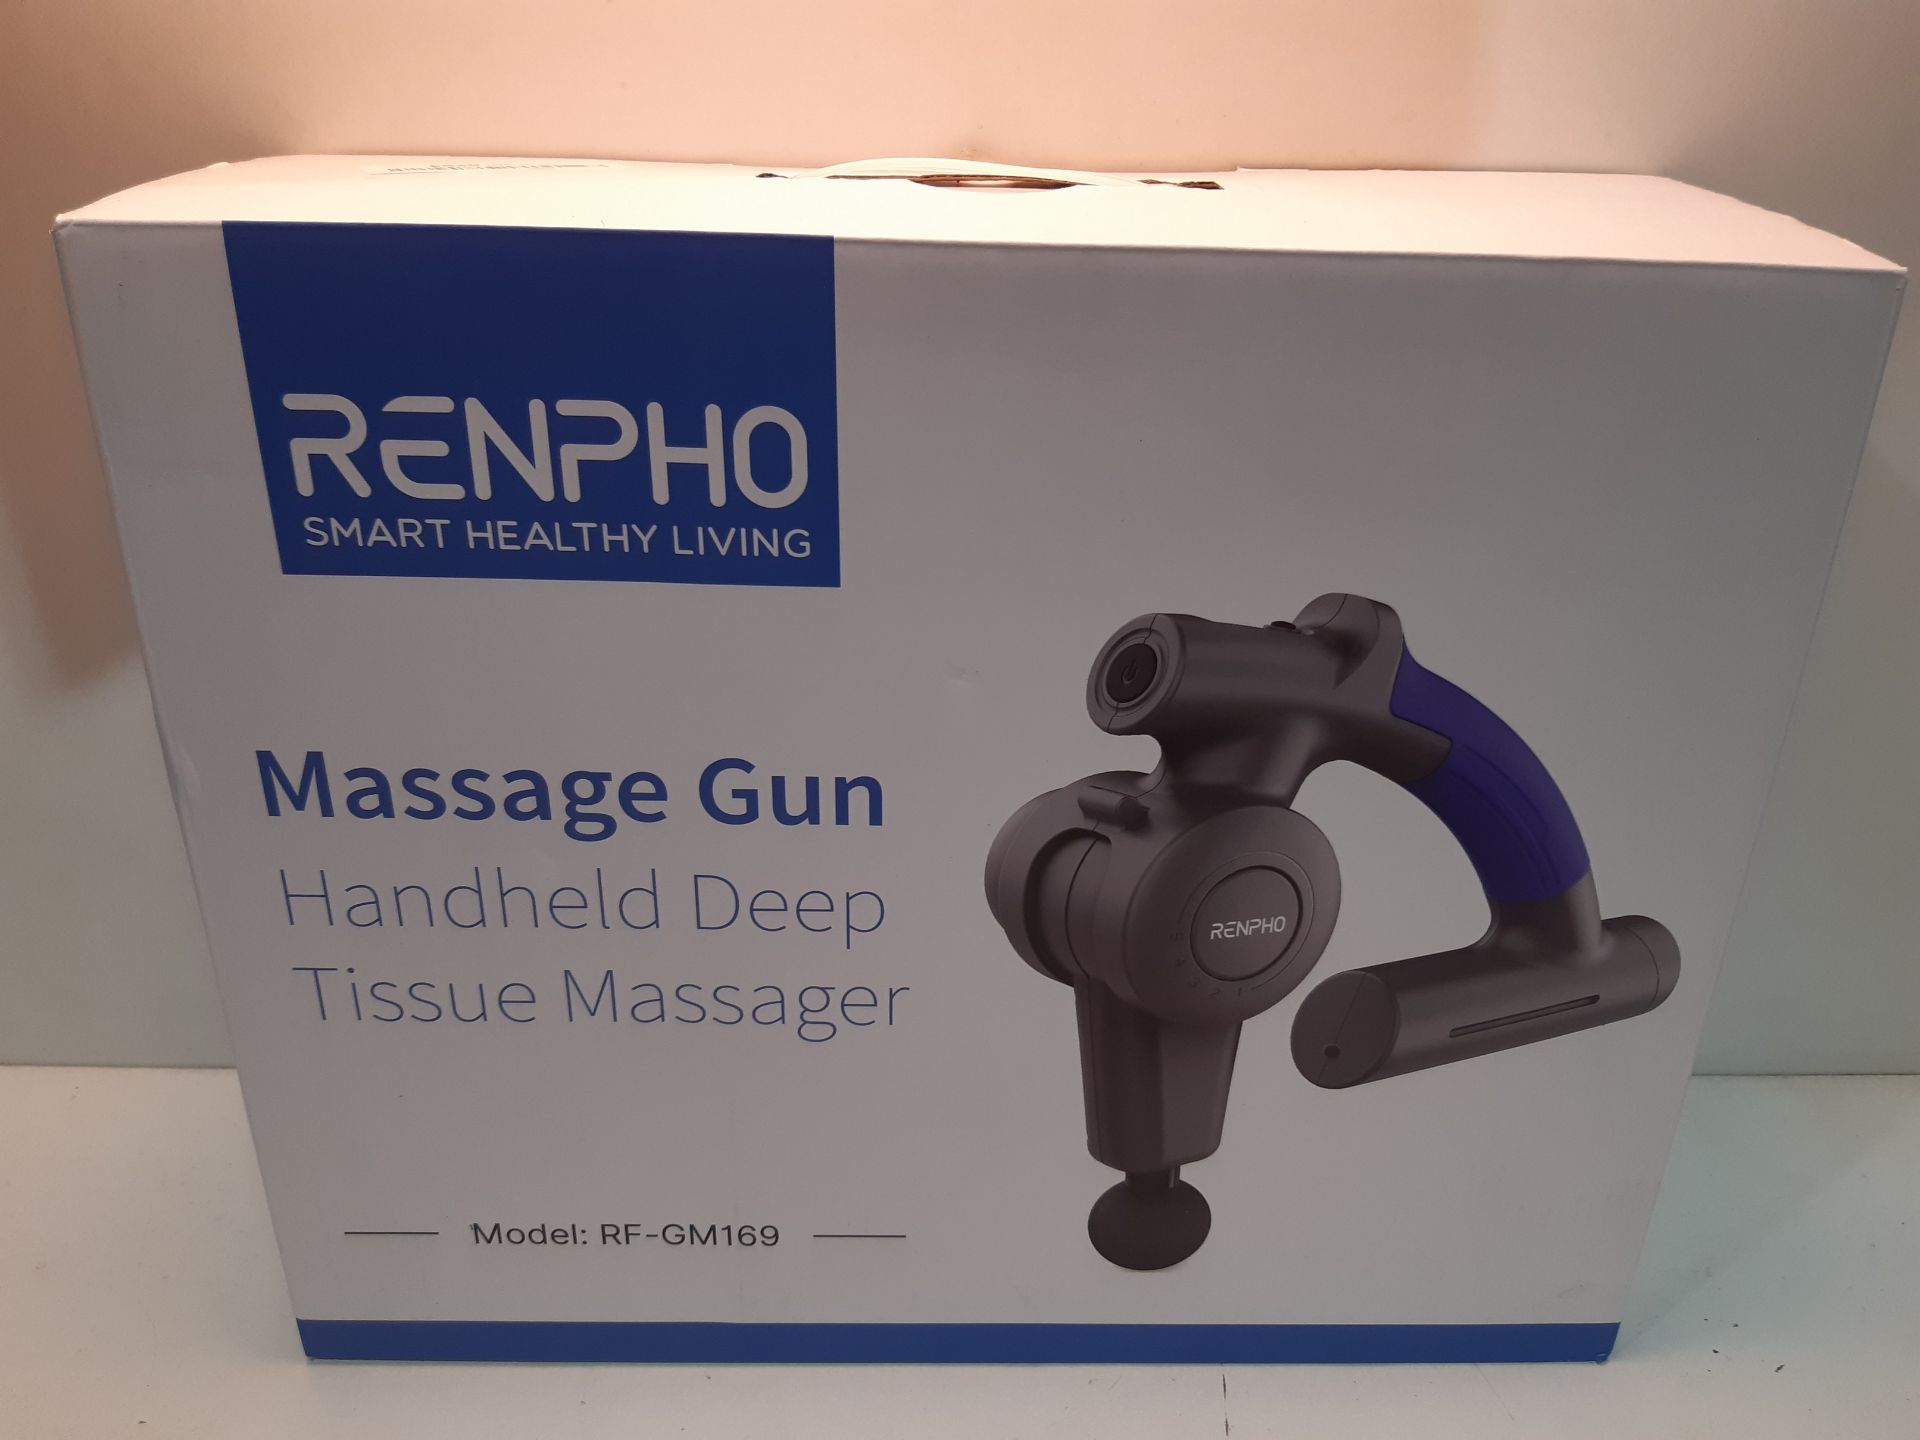 RRP £75.31 Massage Gun - Image 2 of 2